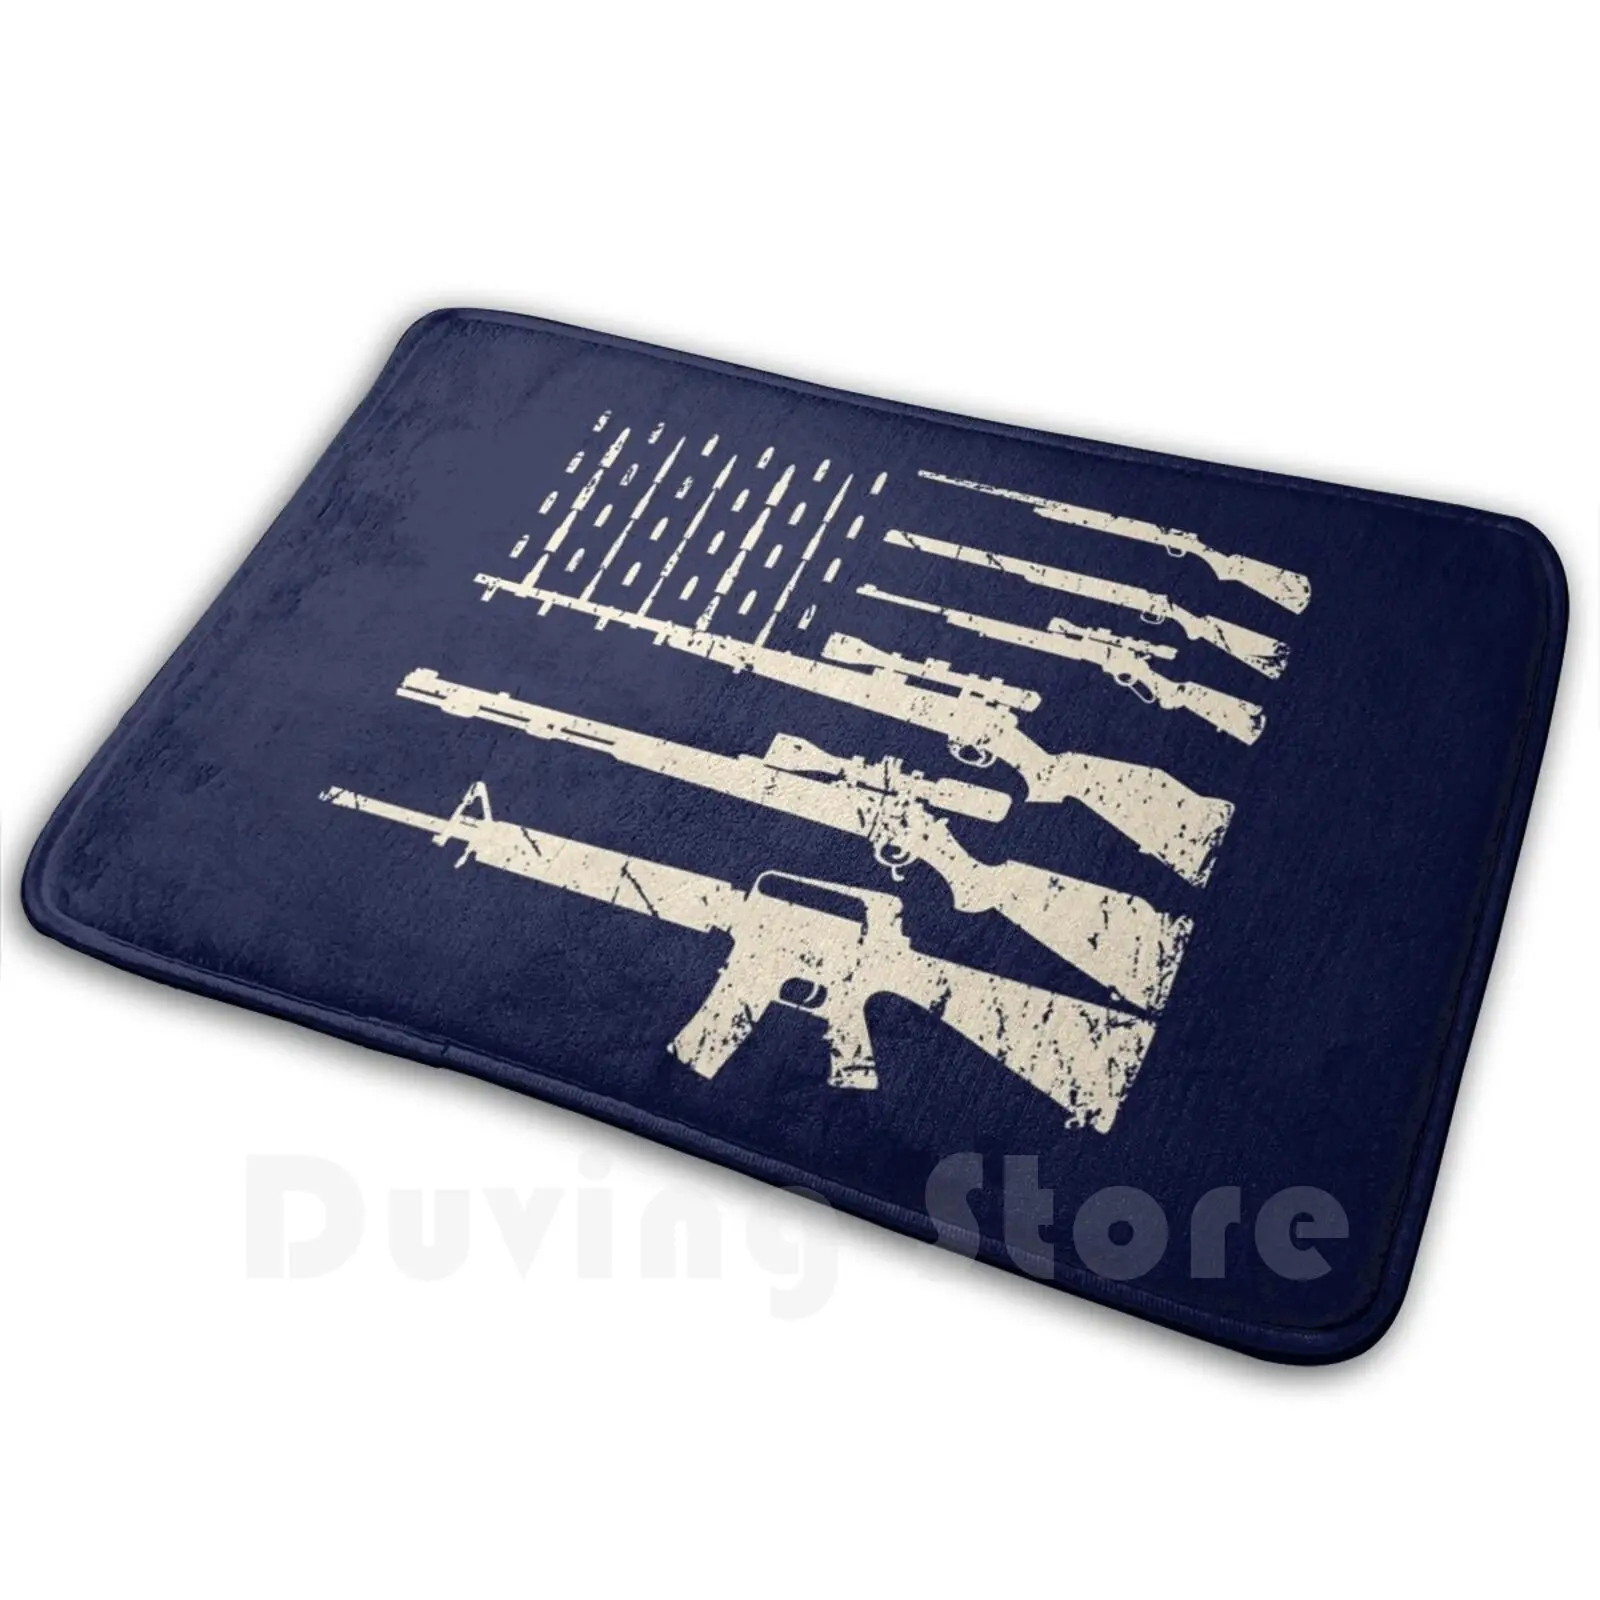 

Пистолеты флaг сшa yзкиe американский флаг винтовки Книги об оружии 2A поправку подарок на день отца пистолет любовника муж подарочные футболки США ковер в виде флага